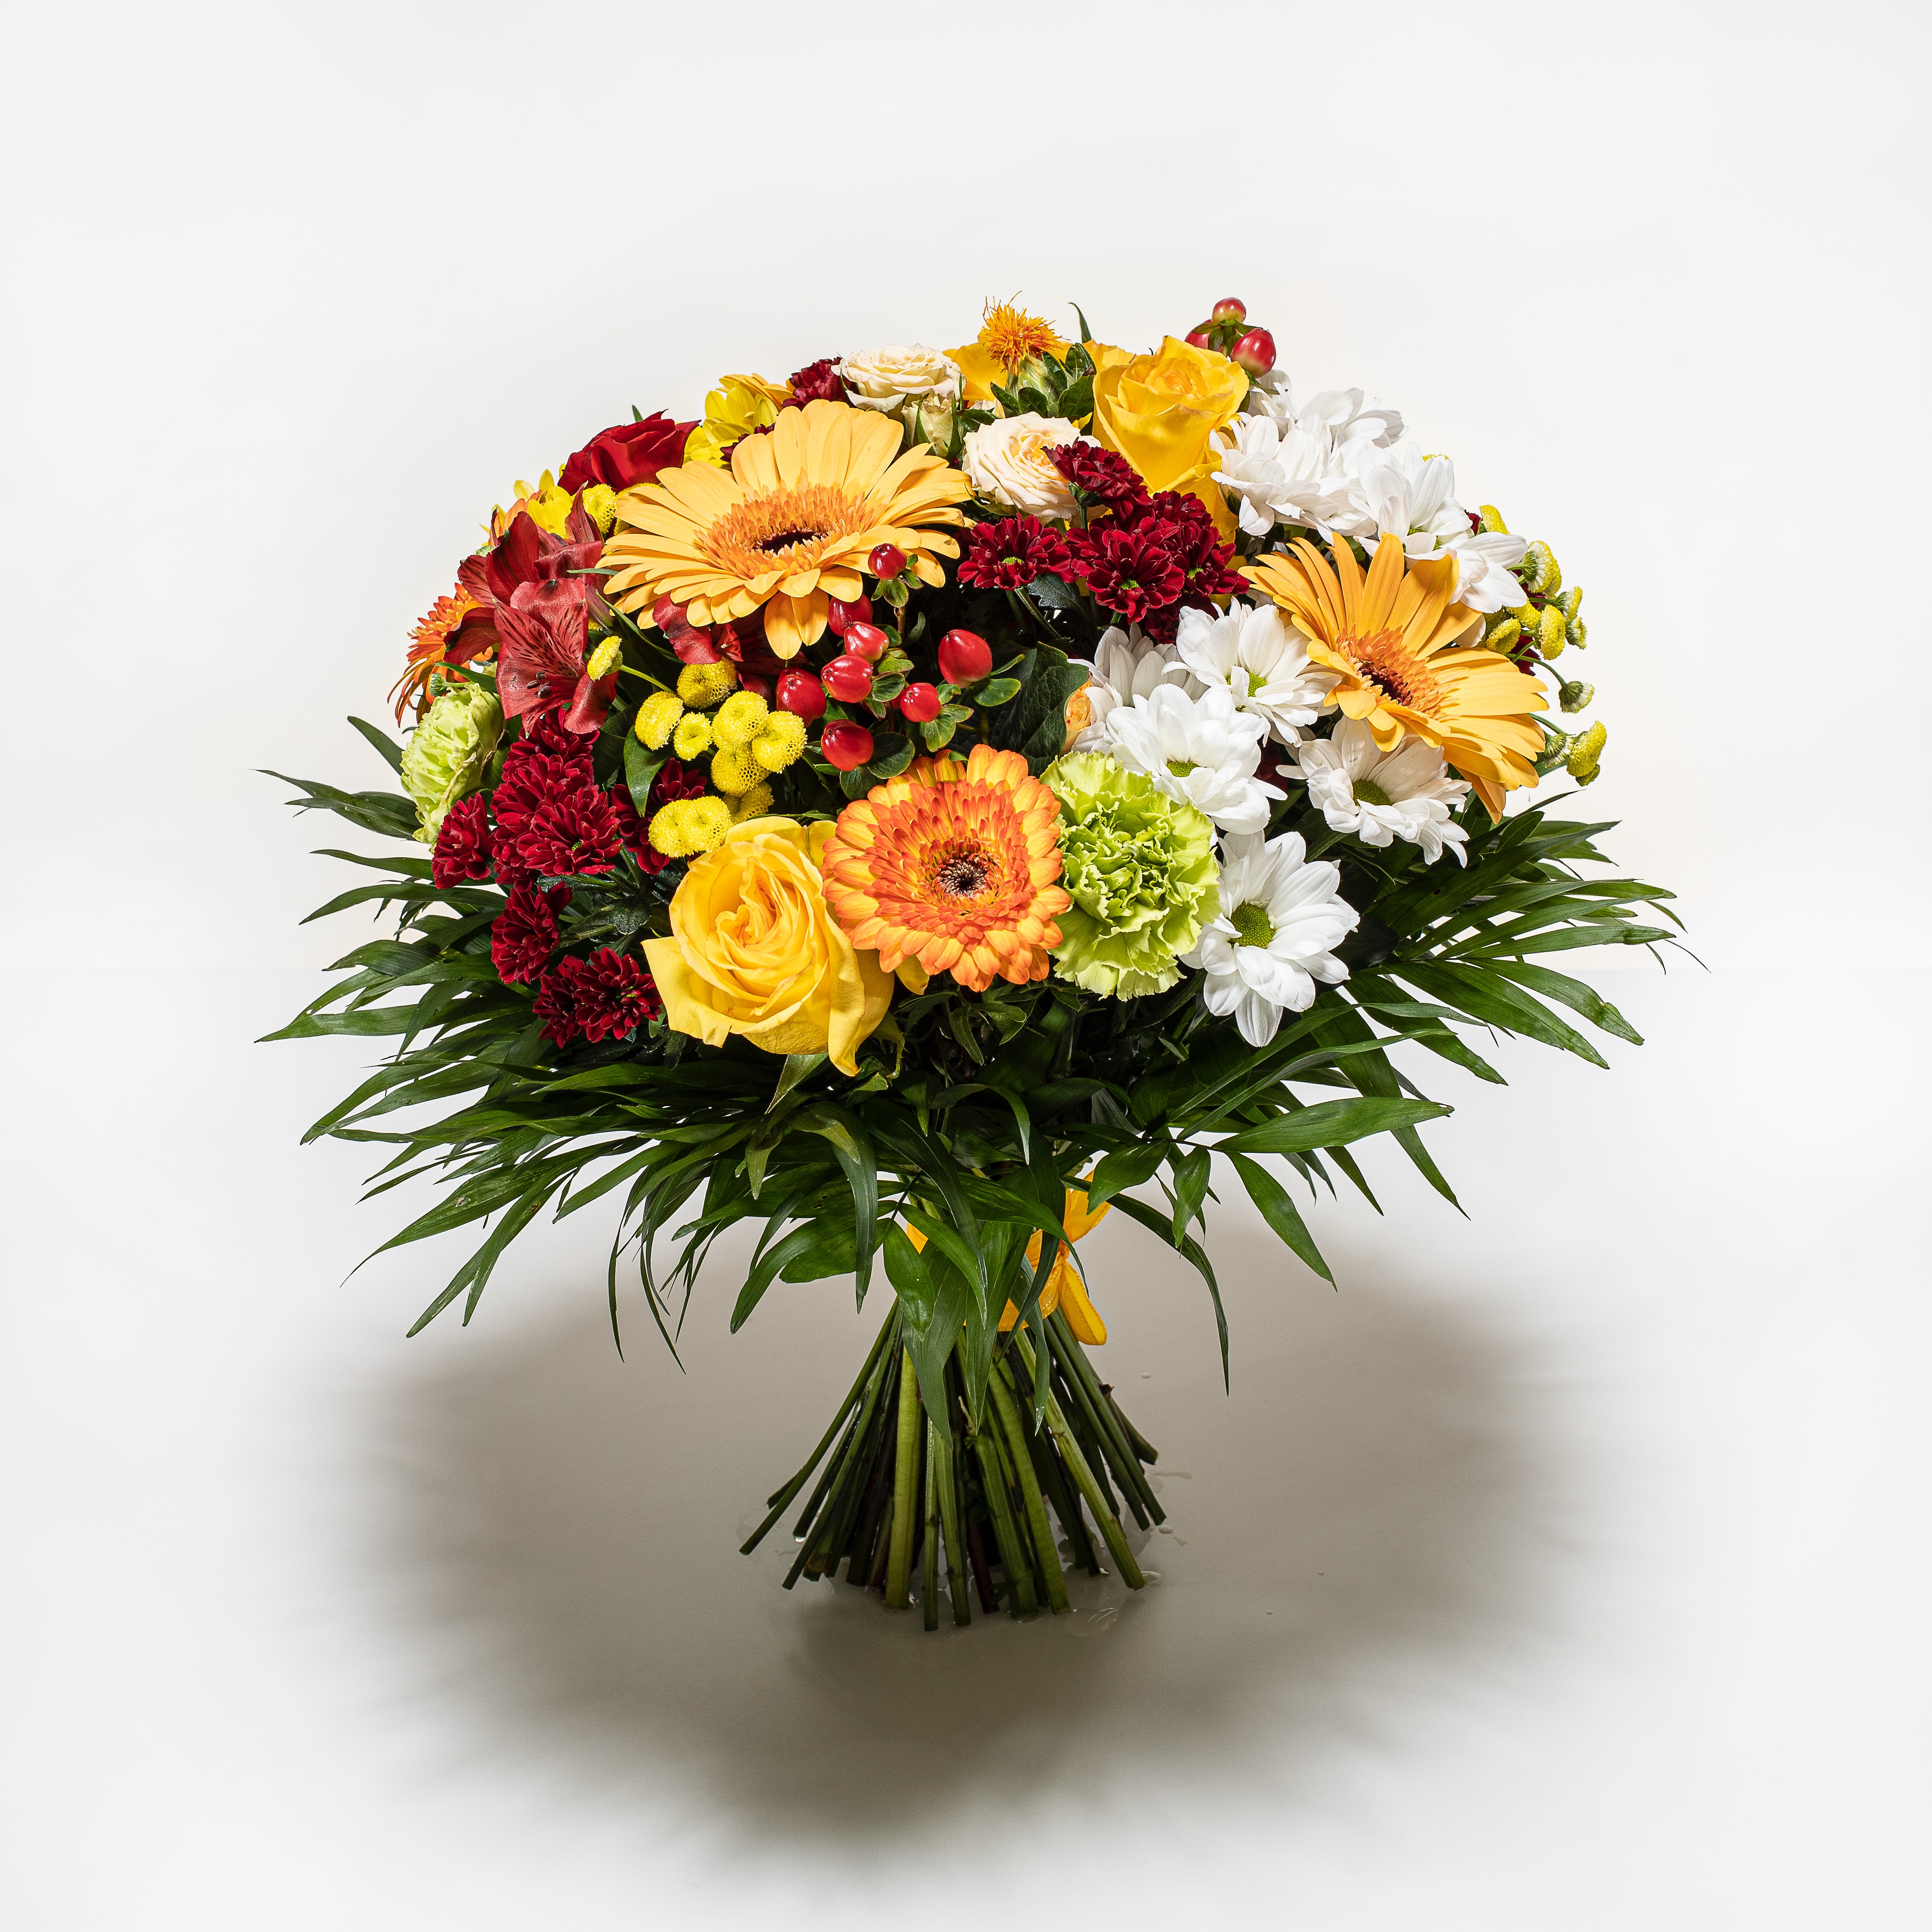 kulatá barevná kytice e-shop s květinami